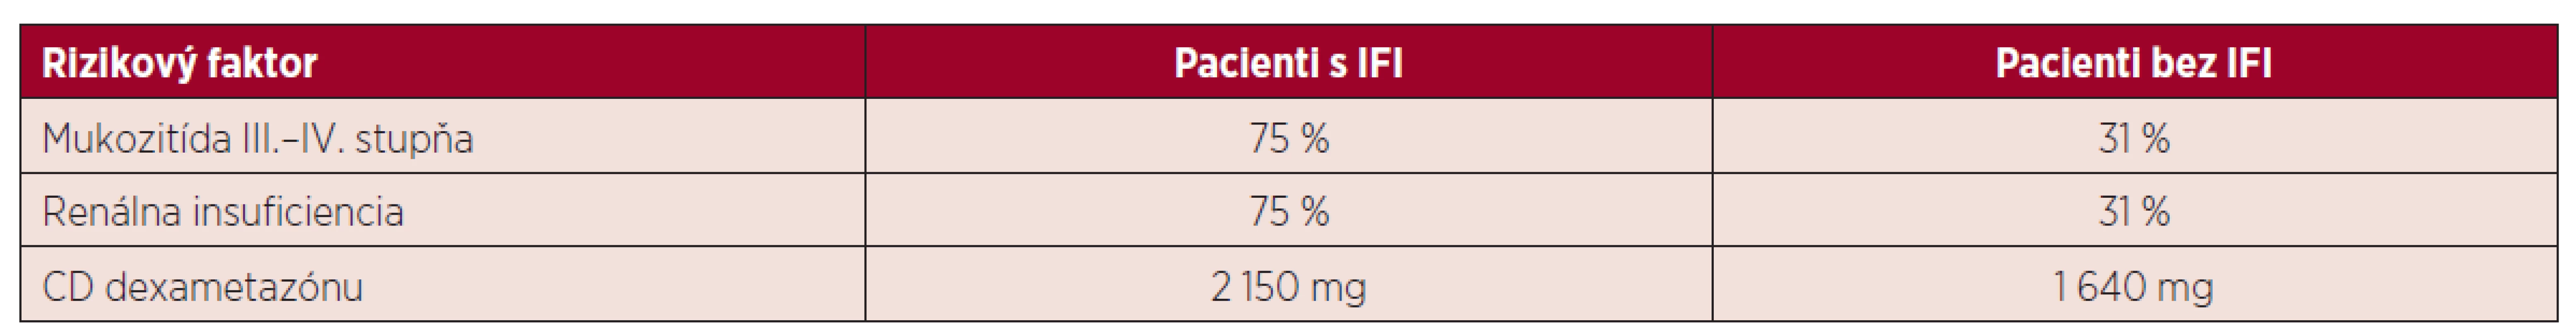 Rizikové faktory v skupine pacientov s IFI a bez IFI